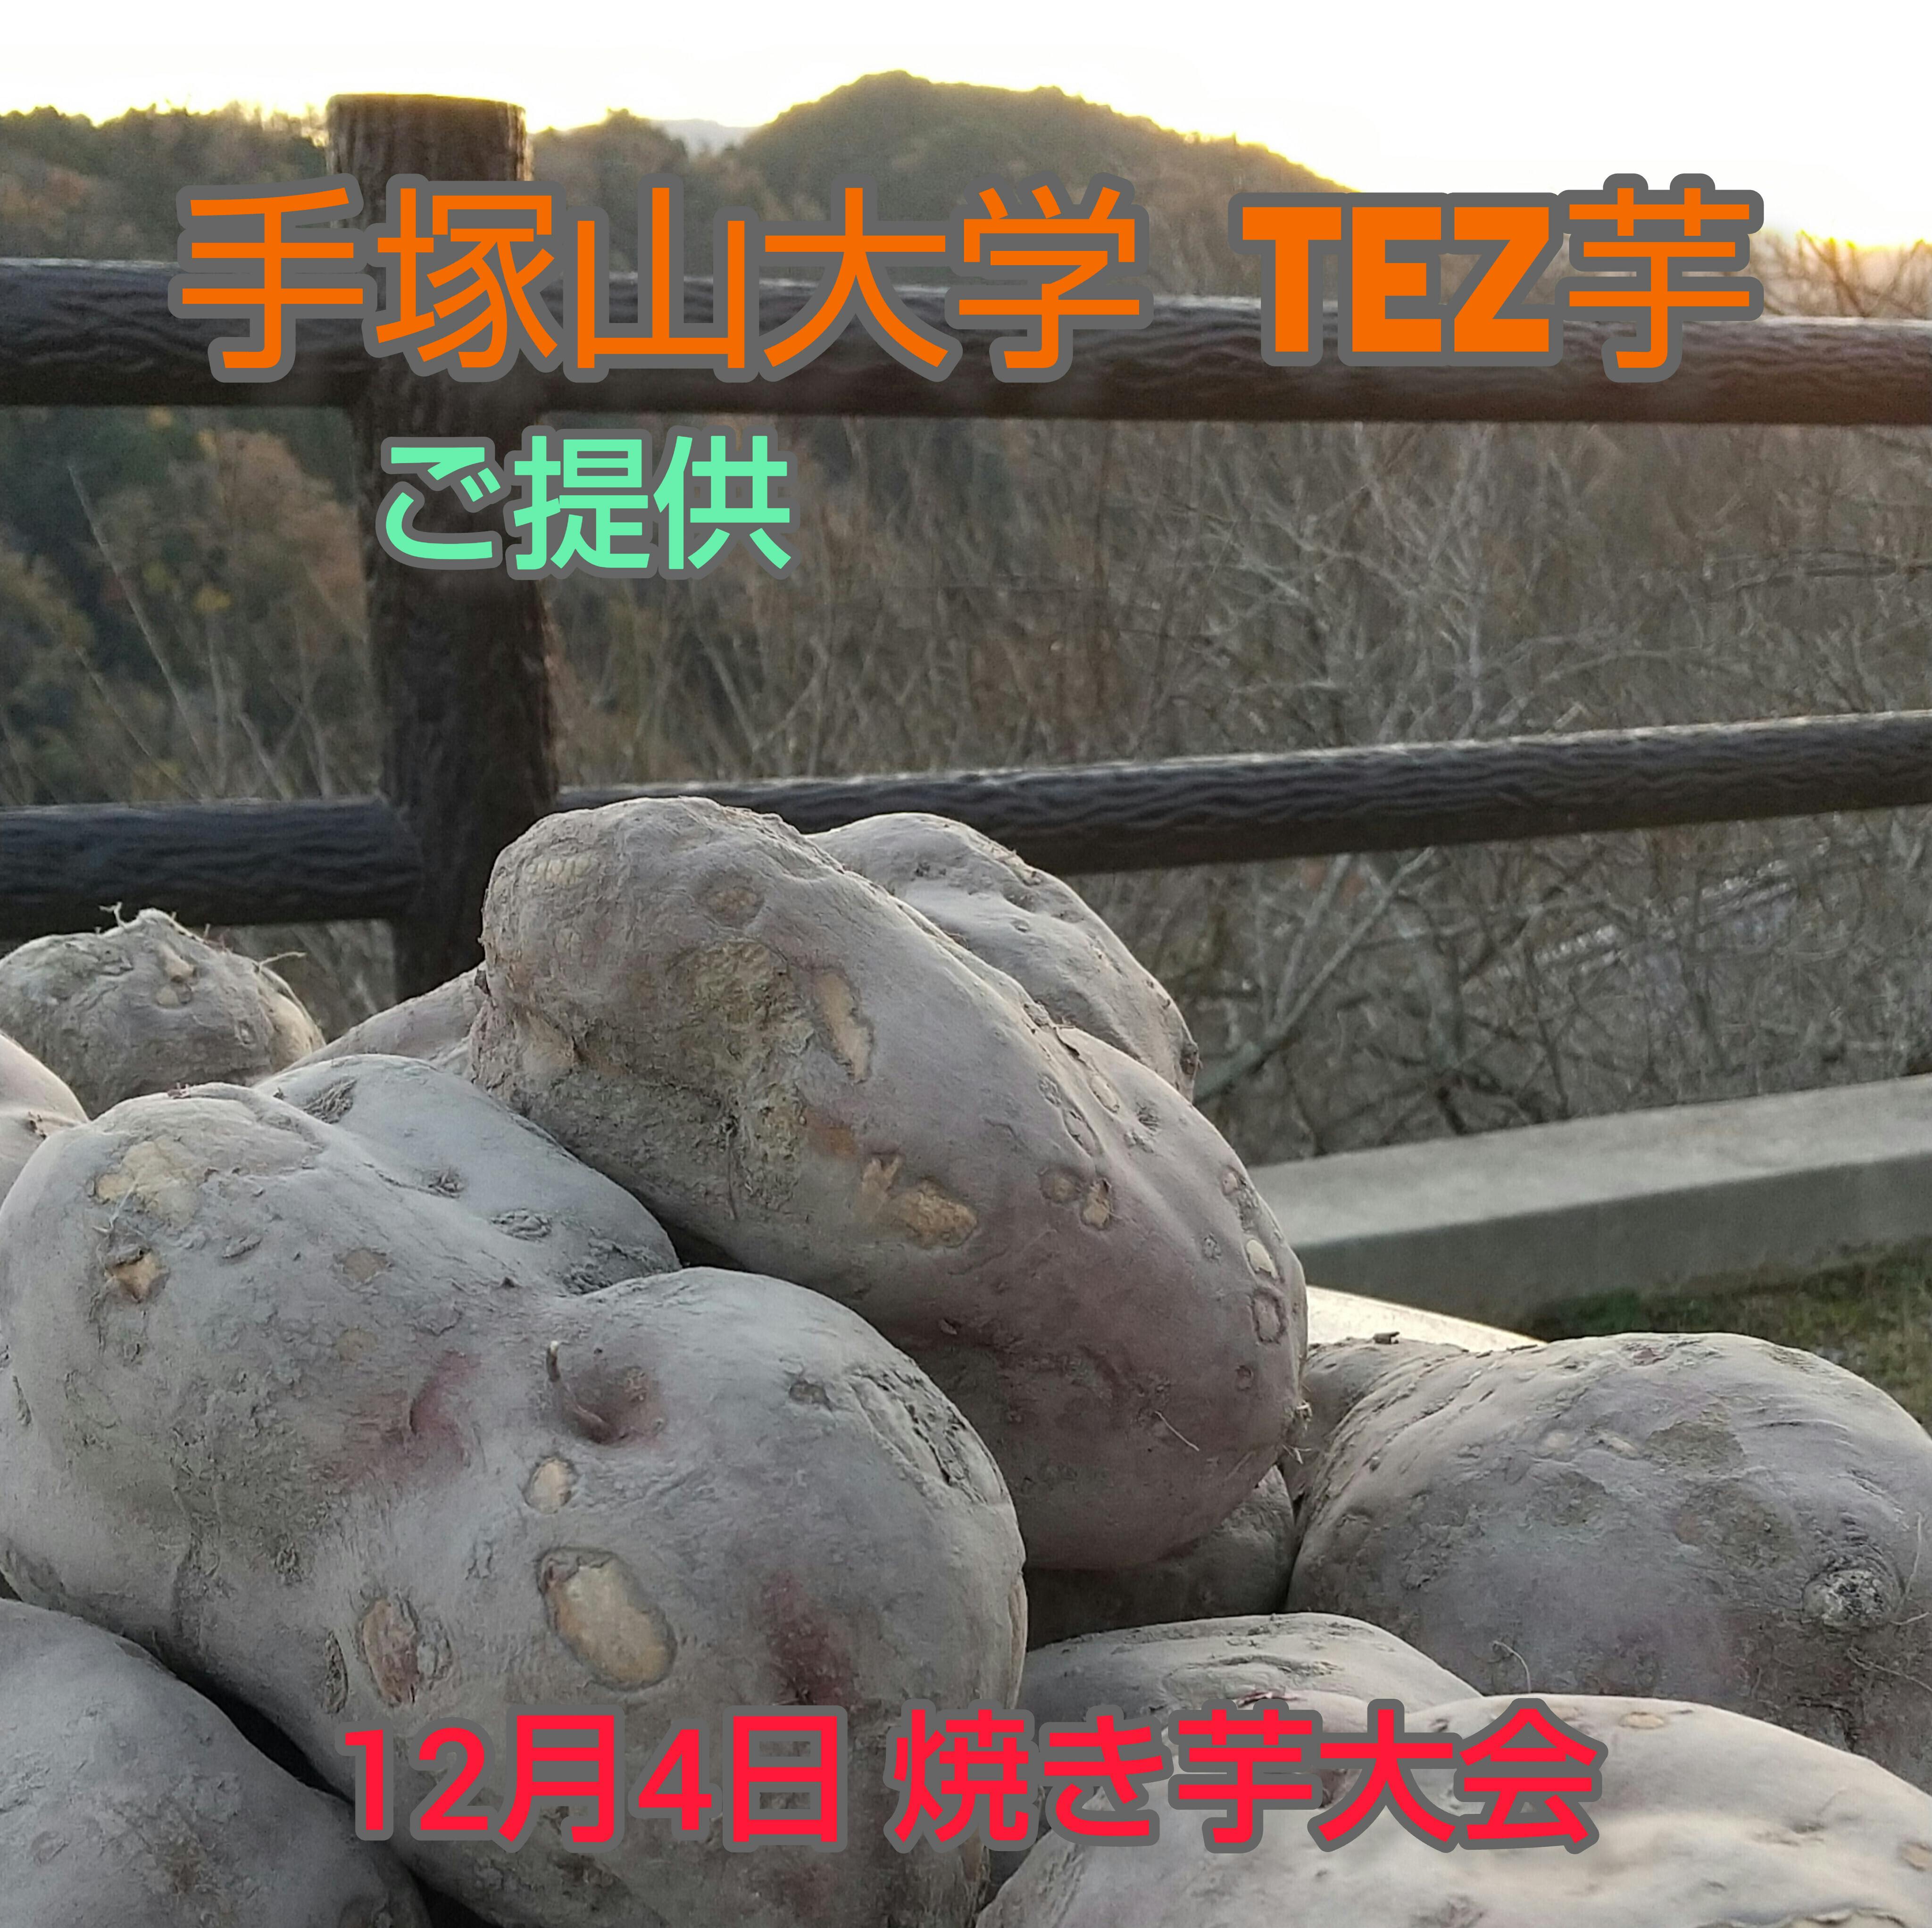 烏梅 3kg 奈良月ヶ瀬 国選定保存技術 - 健康茶